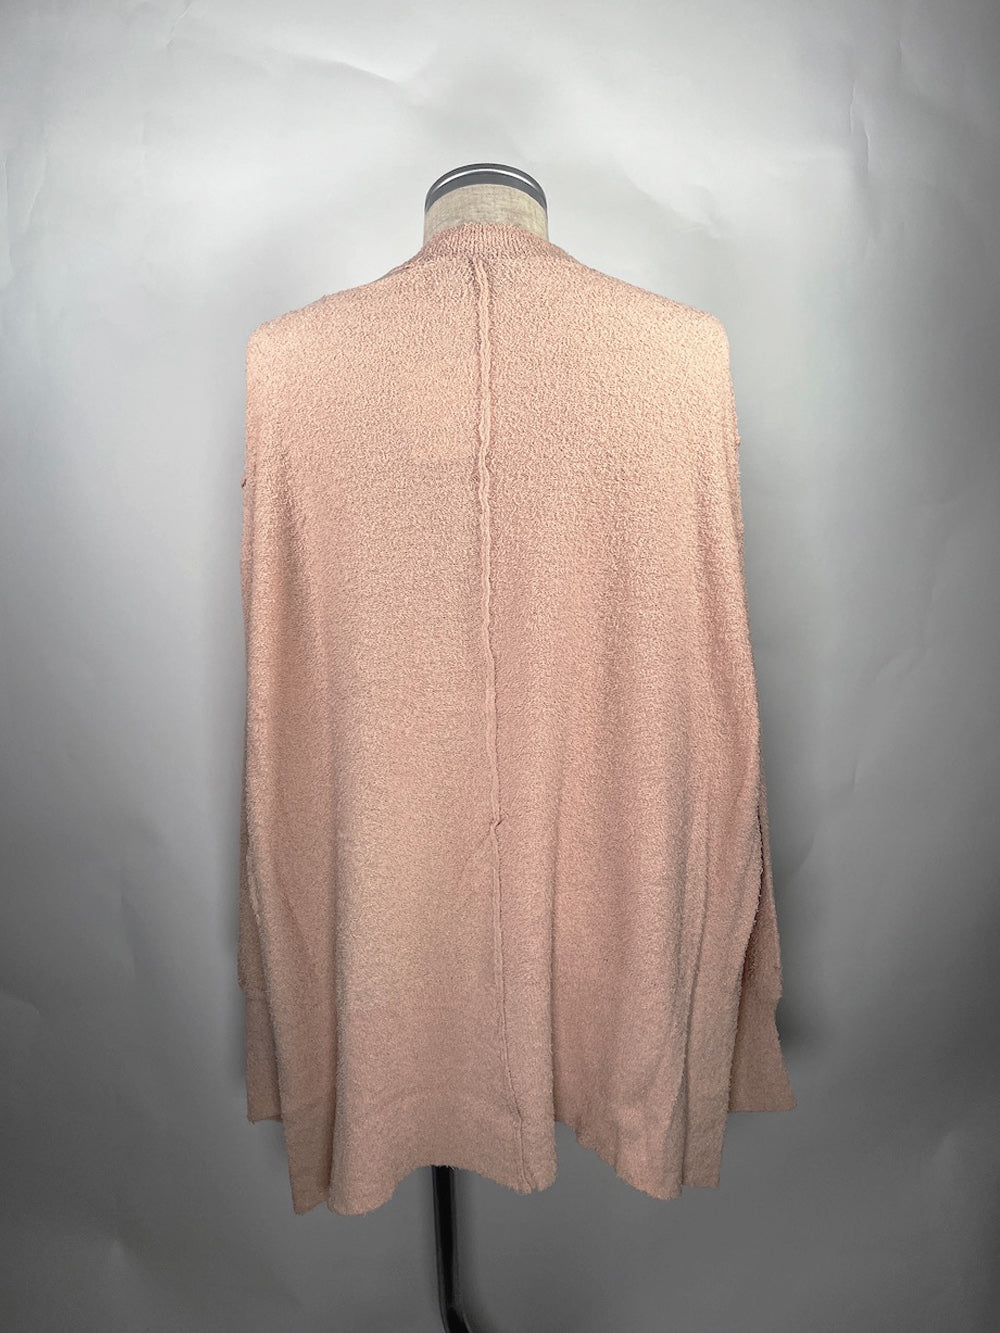 LB23SS-KN02-PL | Pintxos 纱线侧开叉夏季针织衫 | 珊瑚色